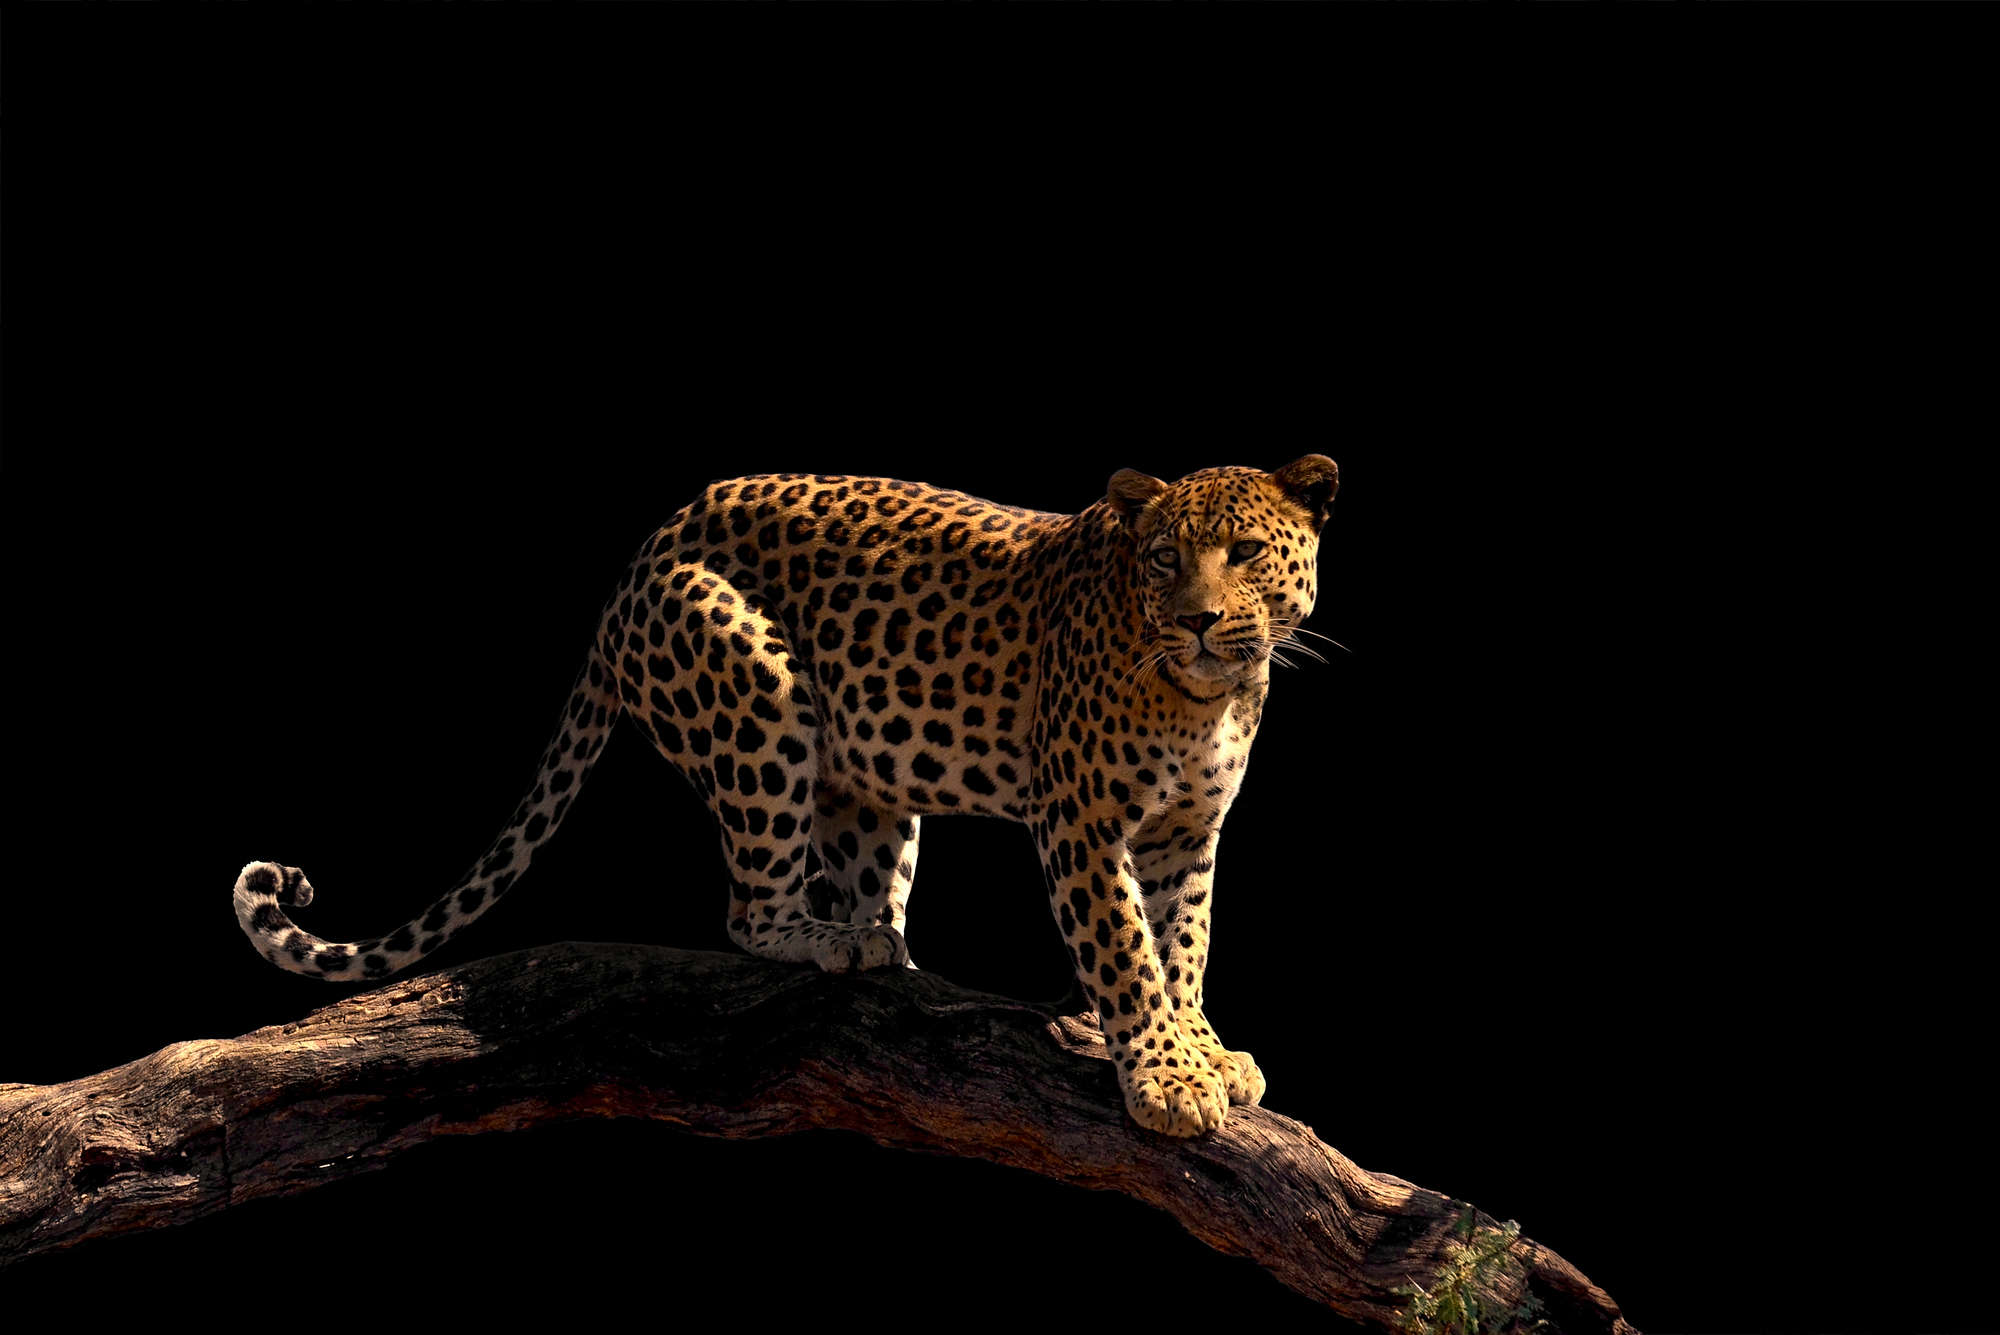             Mural de leopardo de pie sobre una rama en vinilo liso nacarado
        